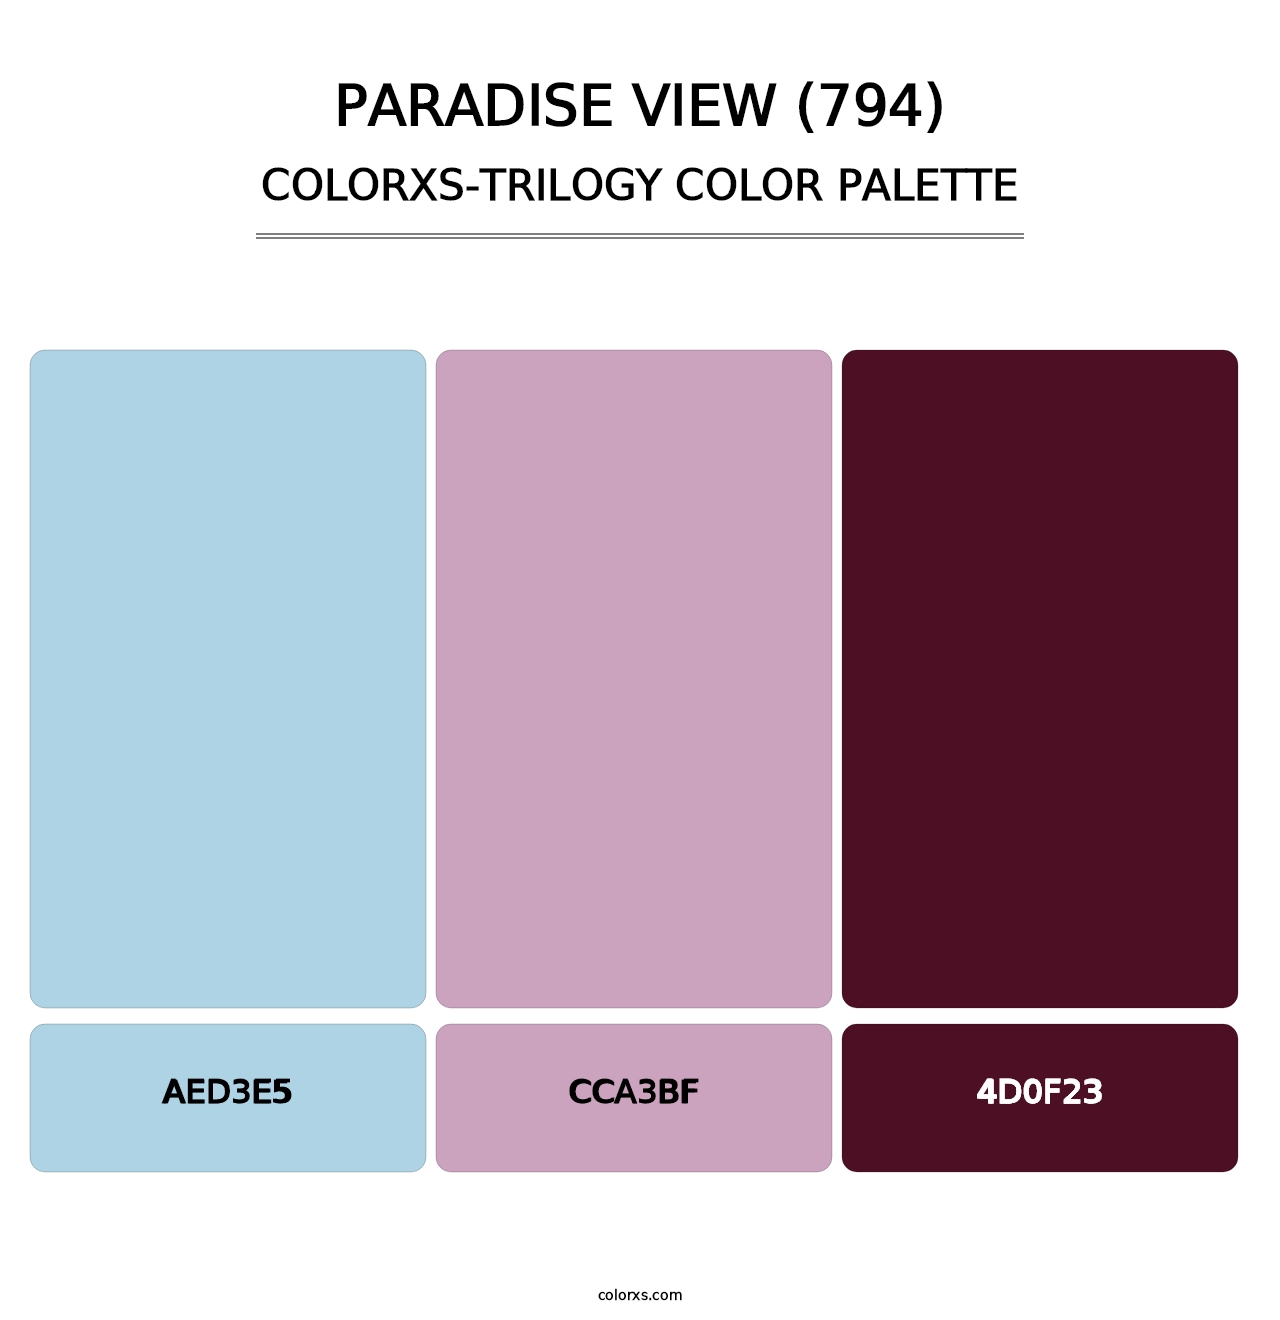 Paradise View (794) - Colorxs Trilogy Palette